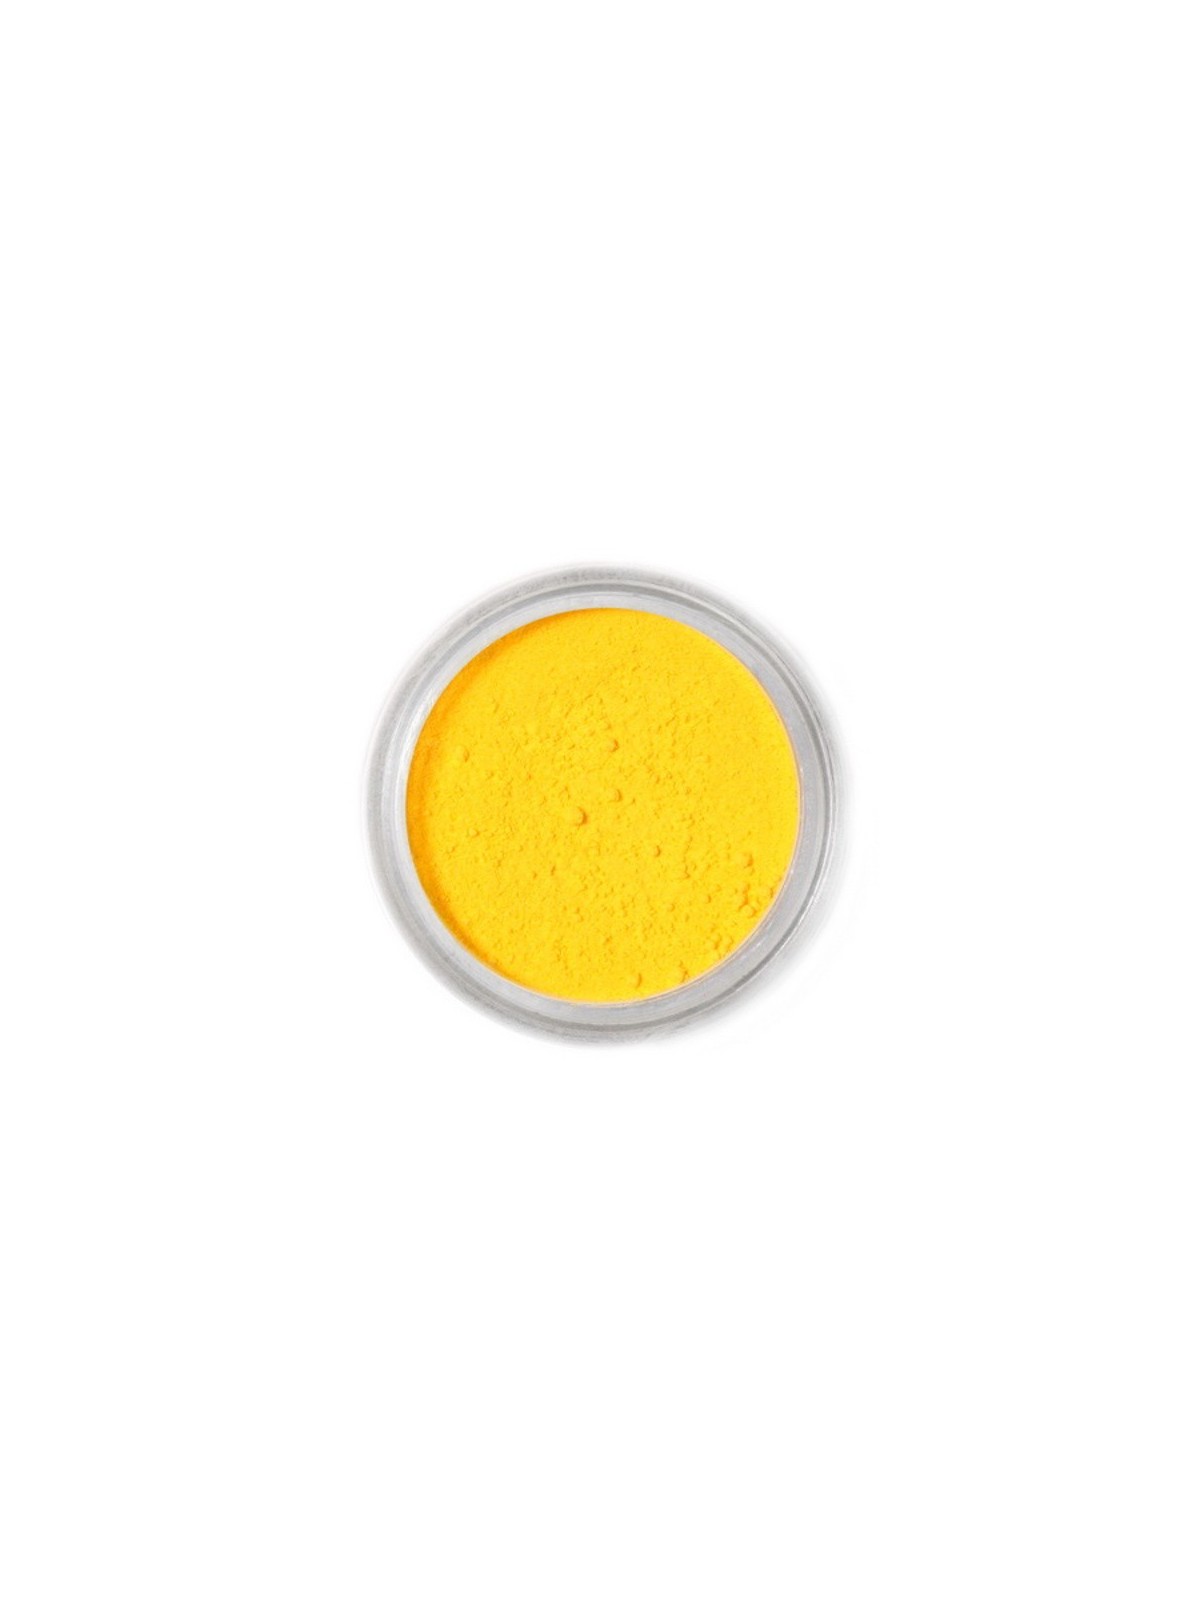 Edible dust color Fractal - Canary Yellow, Kanar sárga (2,5 g)